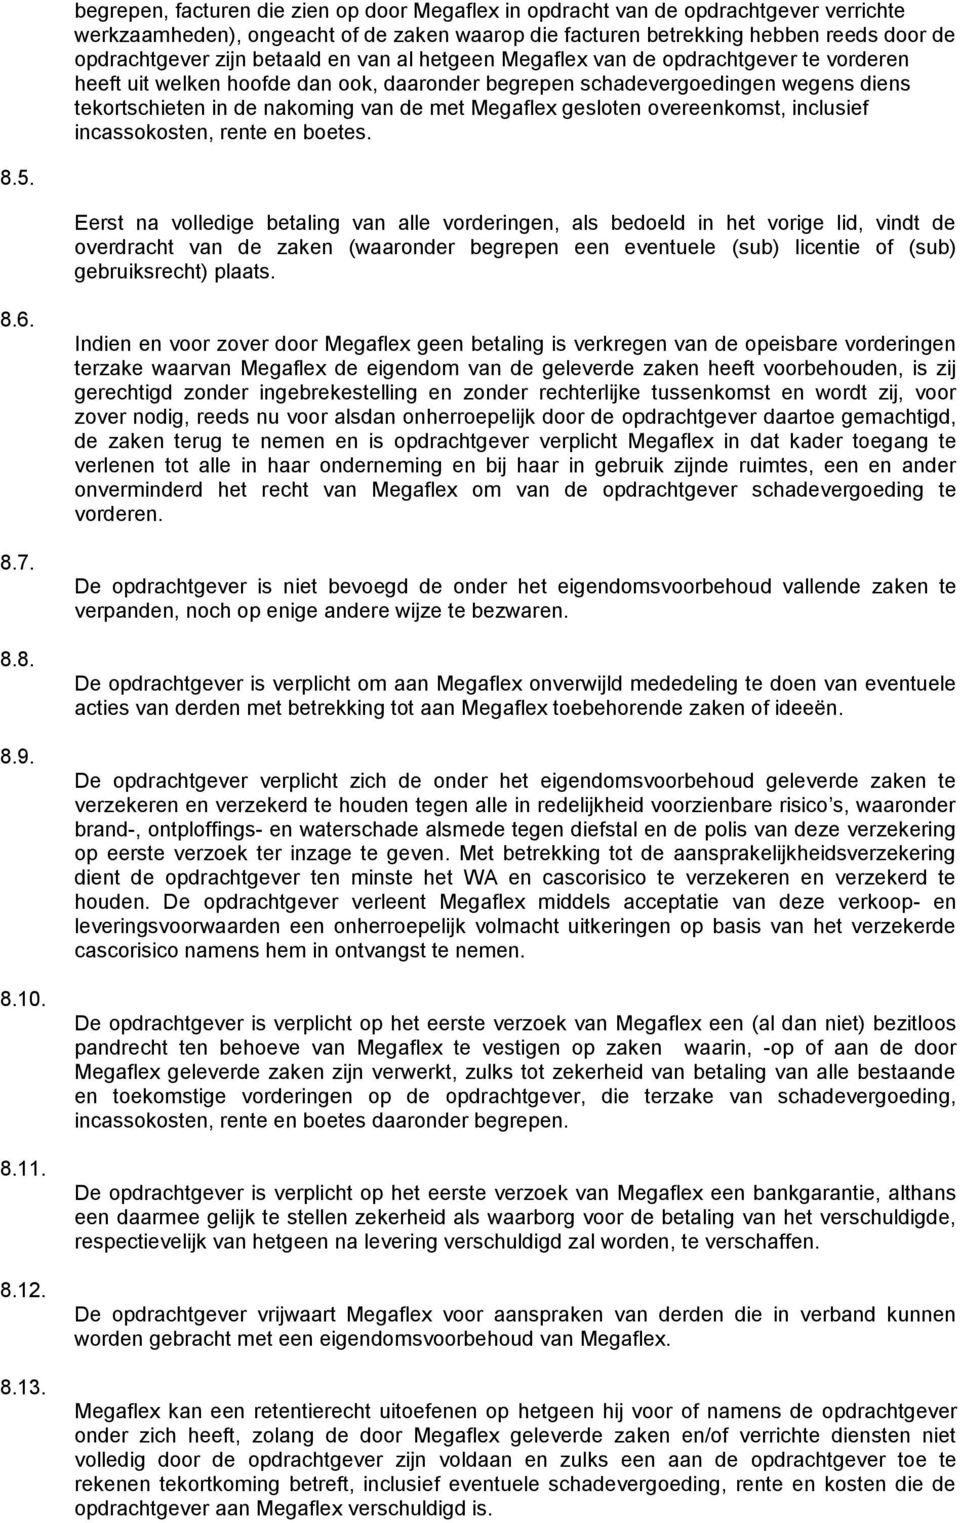 Megaflex gesloten overeenkomst, inclusief incassokosten, rente en boetes. 8.5.